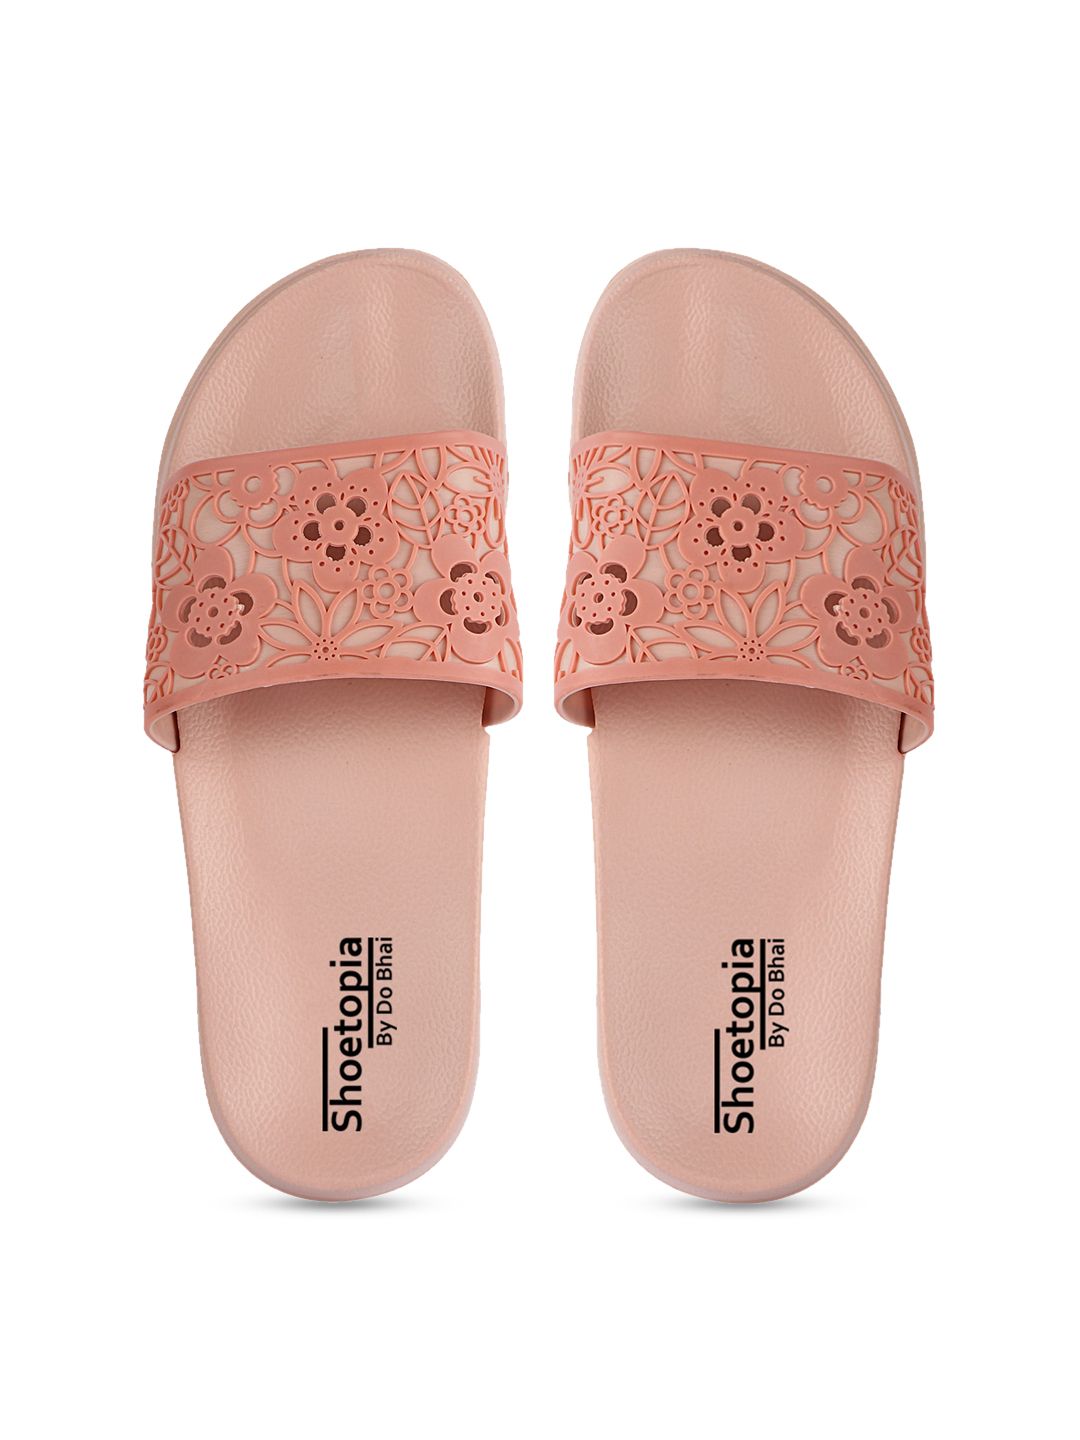 Shoetopia Women Peach-Coloured Self Design Sliders Price in India